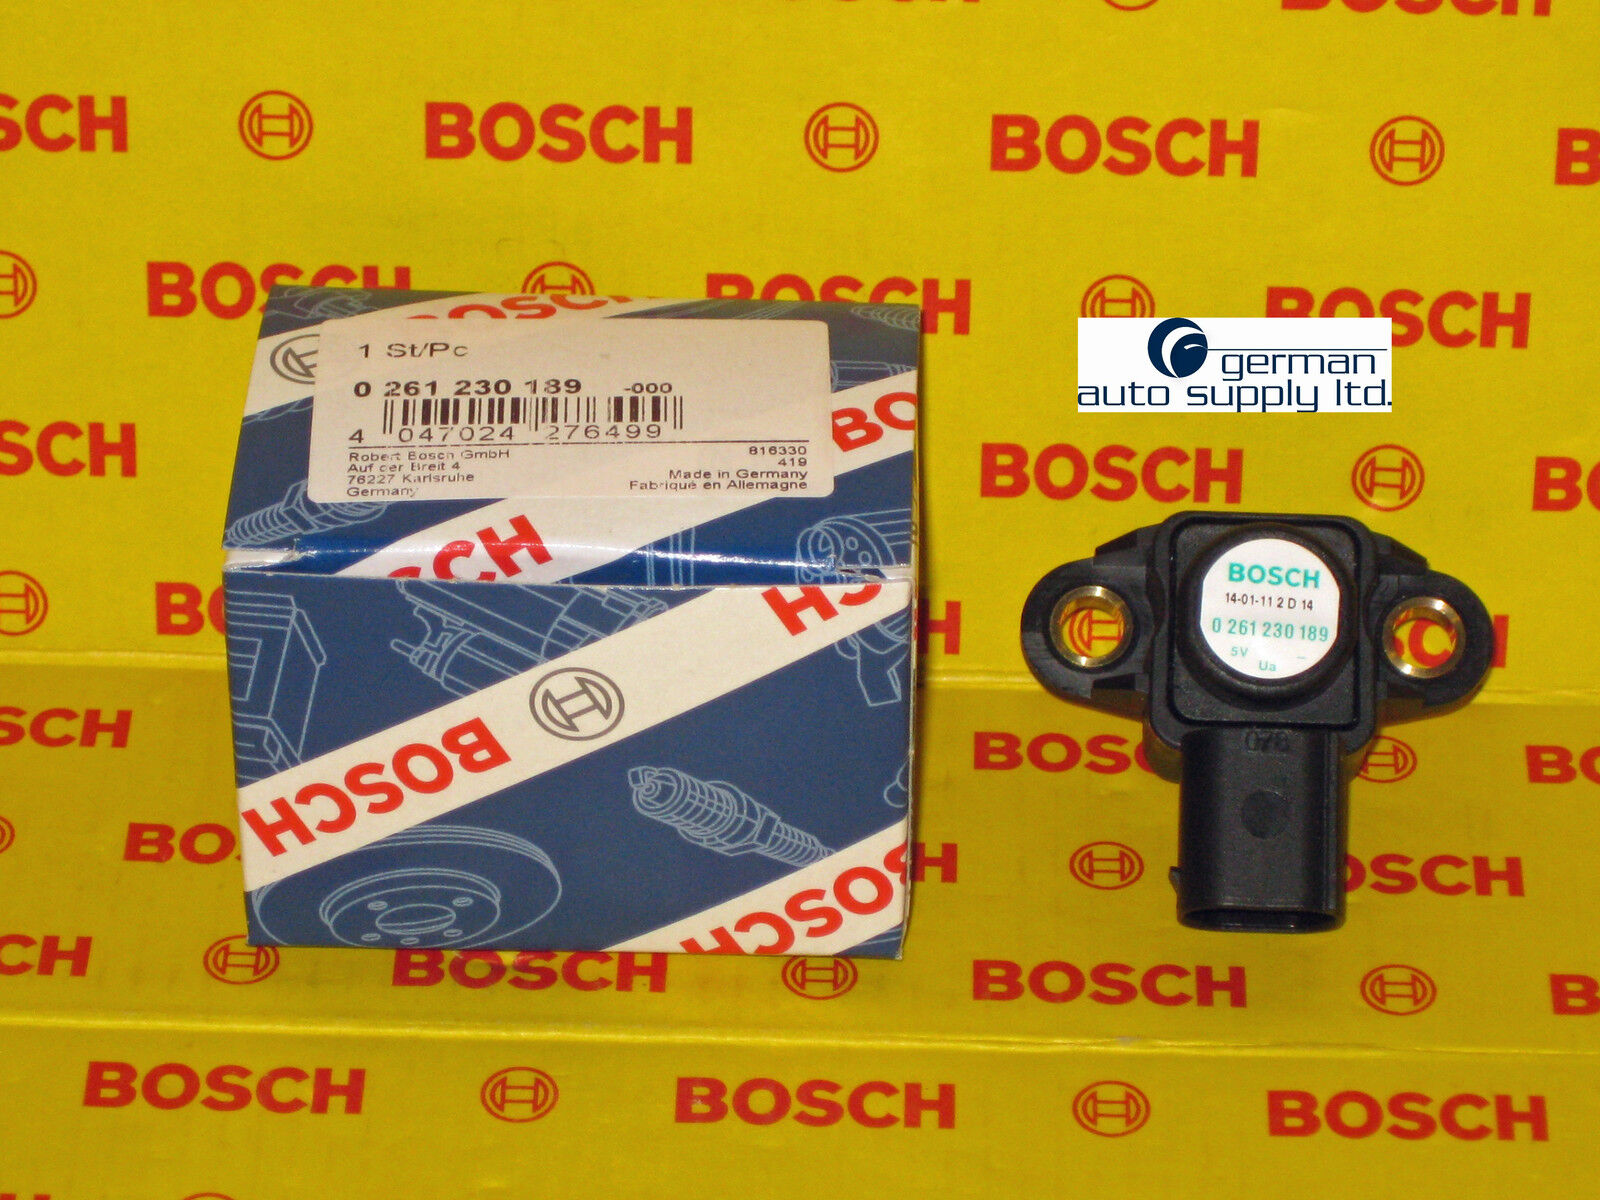 Mercedes-Benz Manifold Absolute Pressure Sensor - BOSCH - 0261230189 - NEW MAP